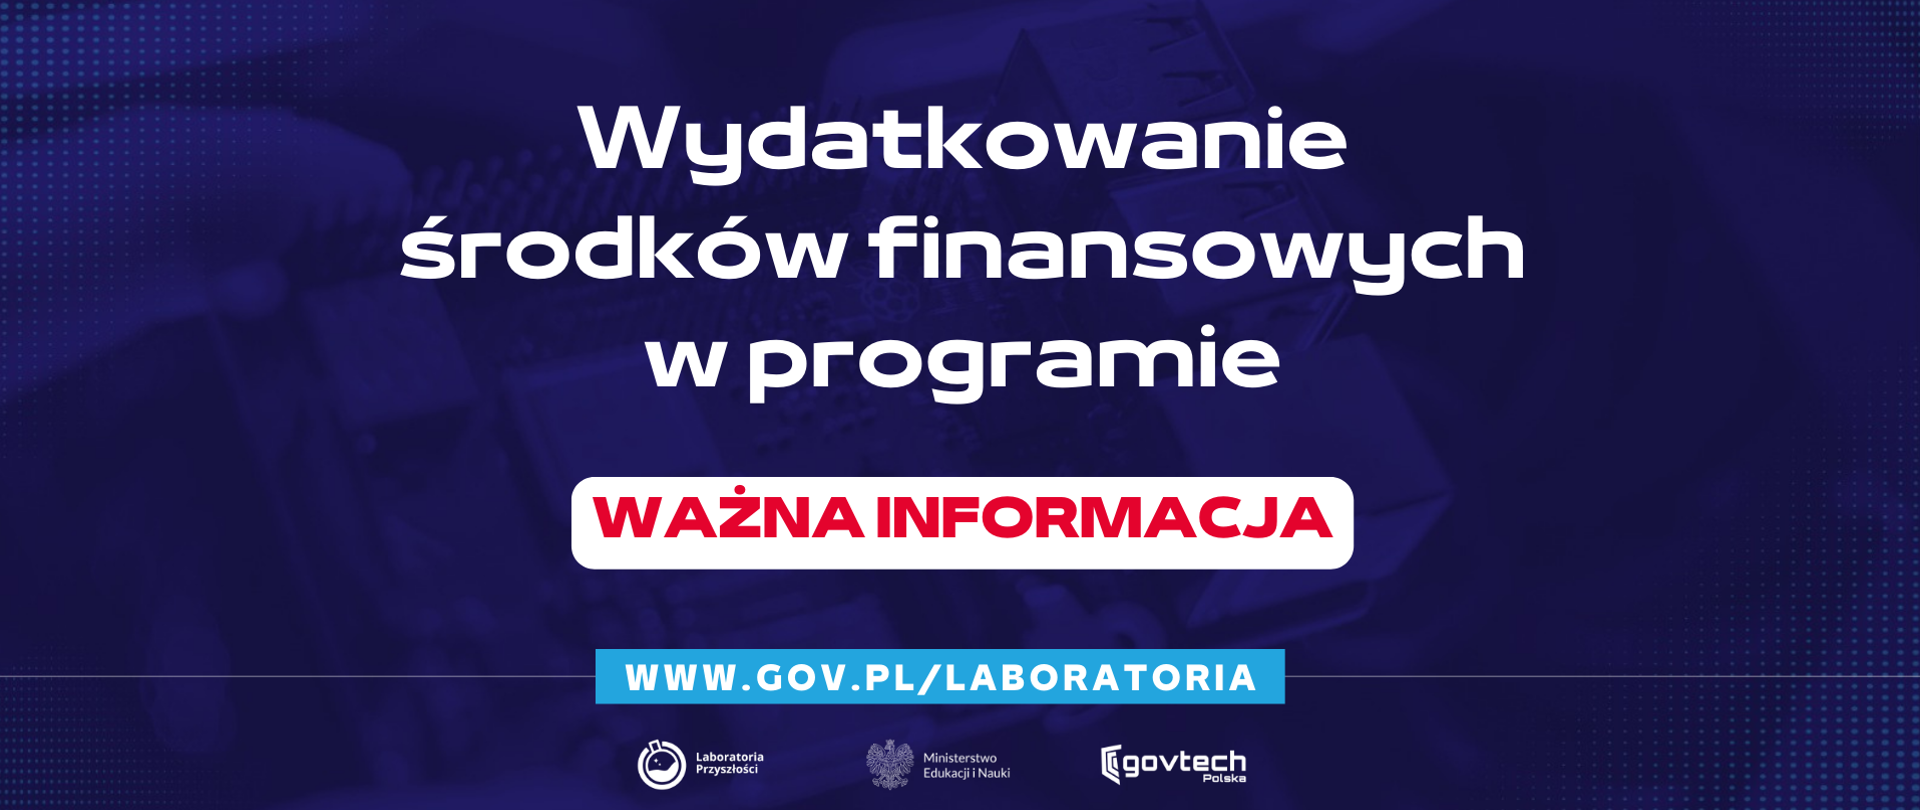 Wydatkowanie środków finansowych w programie
Ważna informacja
www.gov.pl/laboratoria